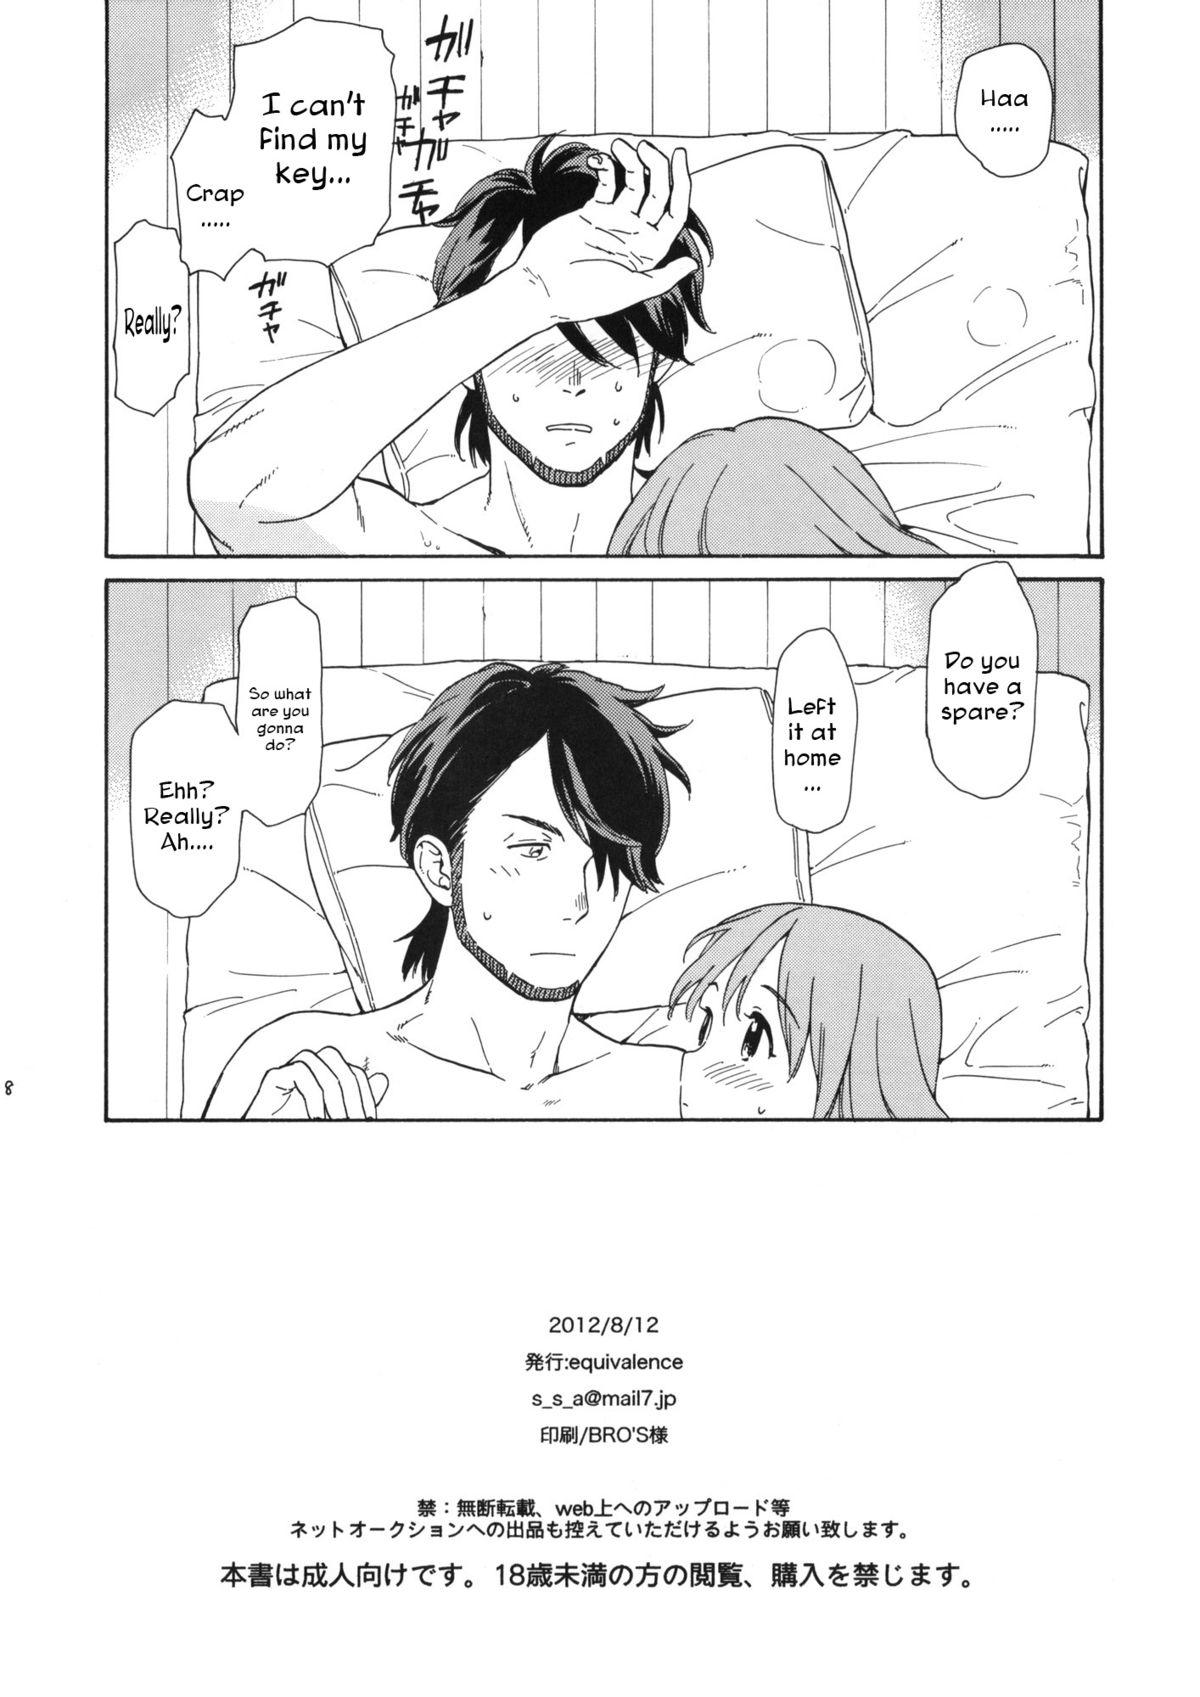 4some Kanojo no Oukoku no Natsu - Inazuma eleven Gang - Page 8